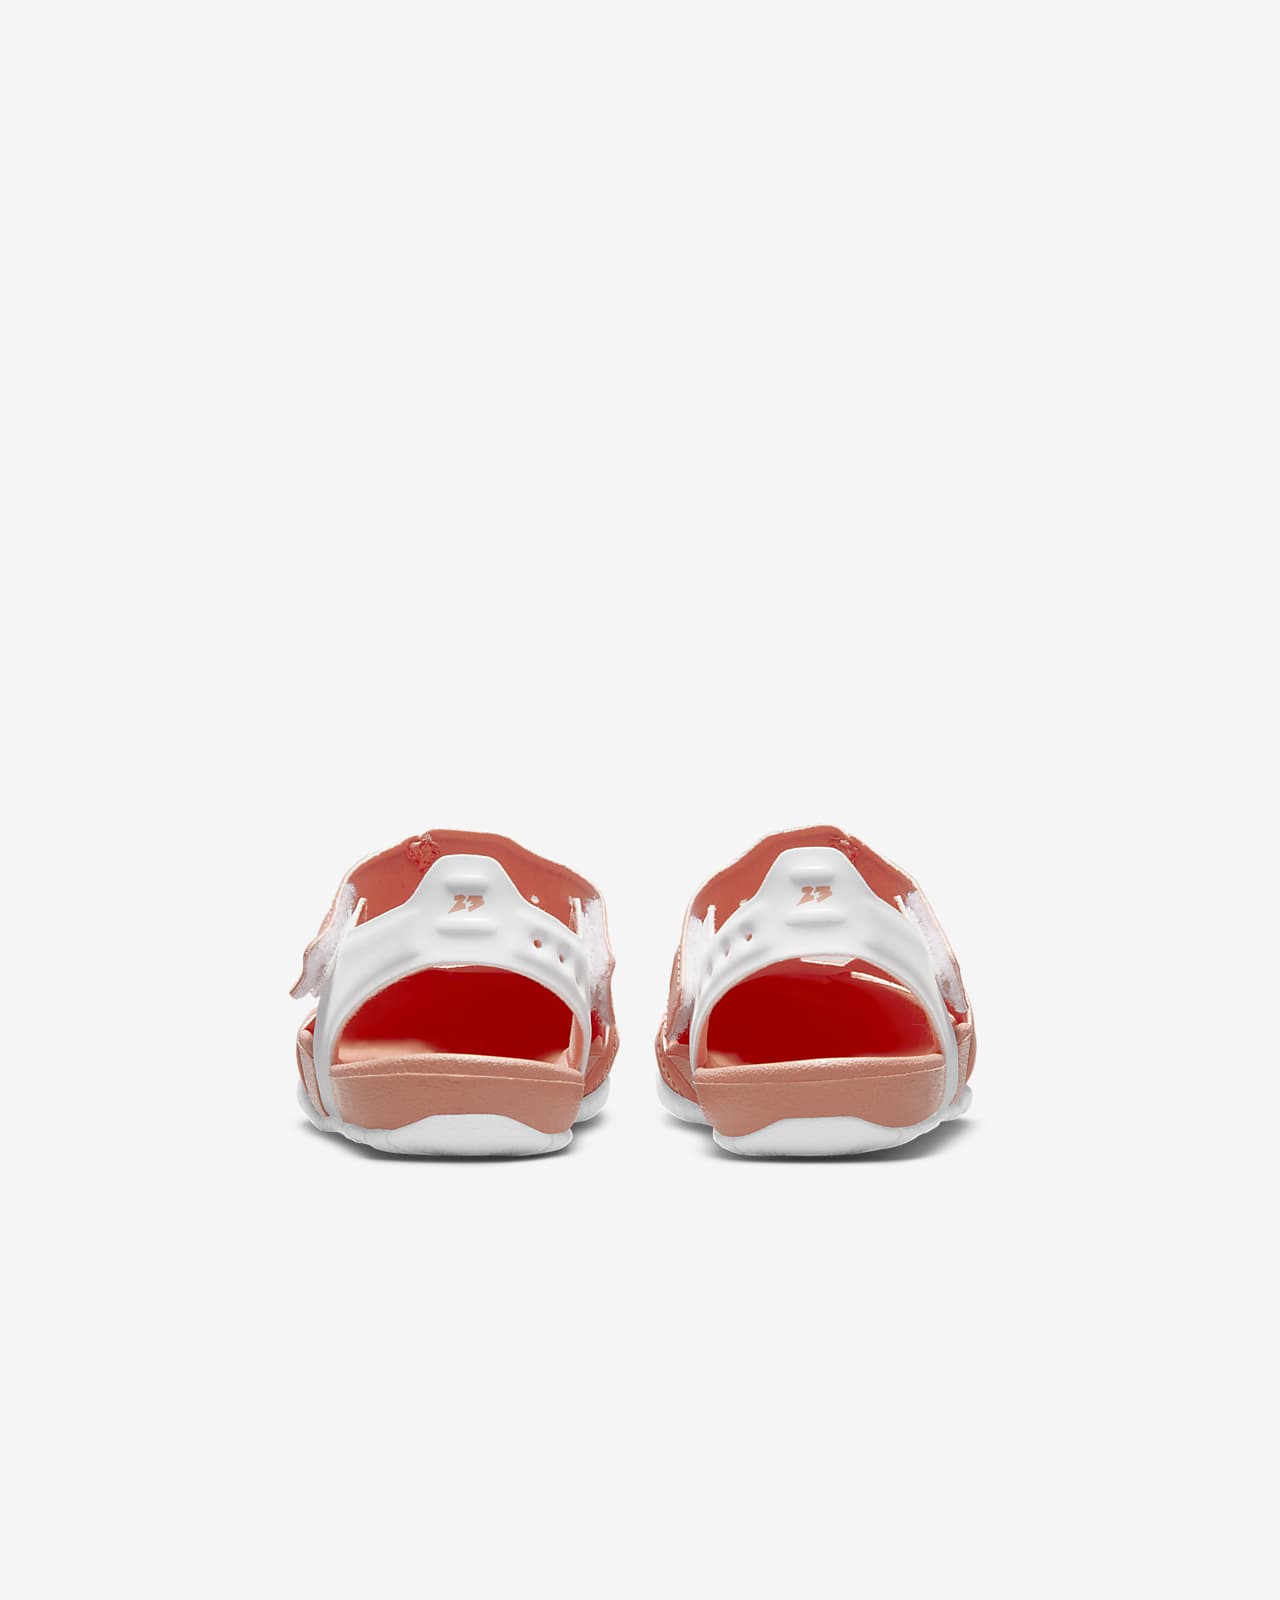 infant jordan shoes 0 3 months girl